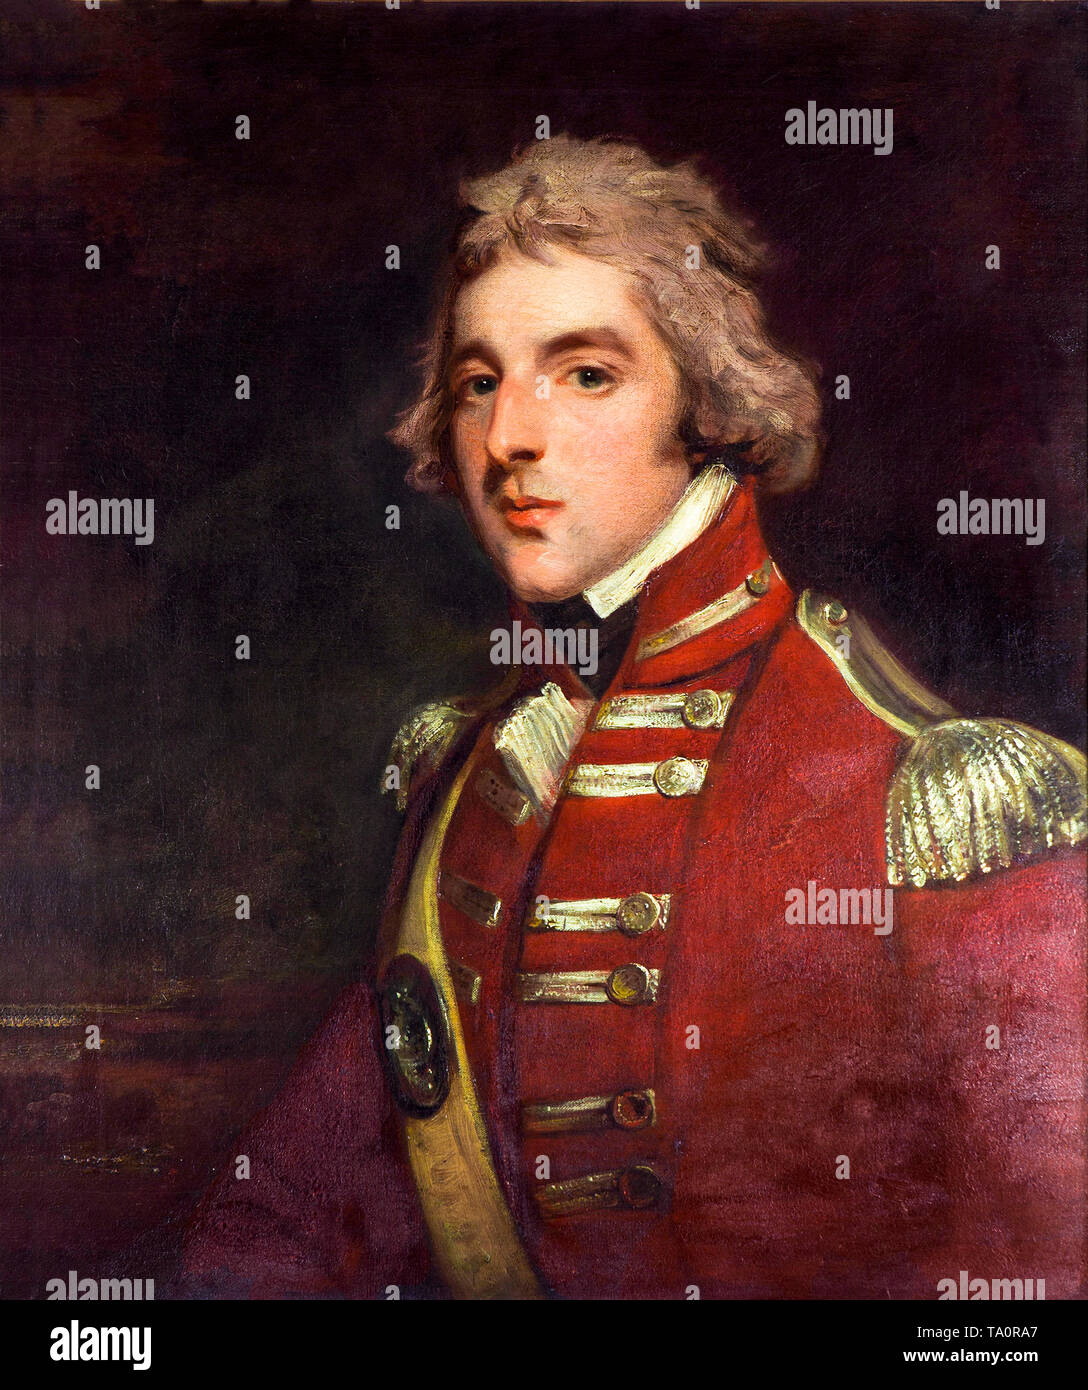 John Hoppner, tenente colonnello Arthur Wellesley, di anni 26, alla XXXIII reggimento, ritratto dipinto, c. 1795 Foto Stock